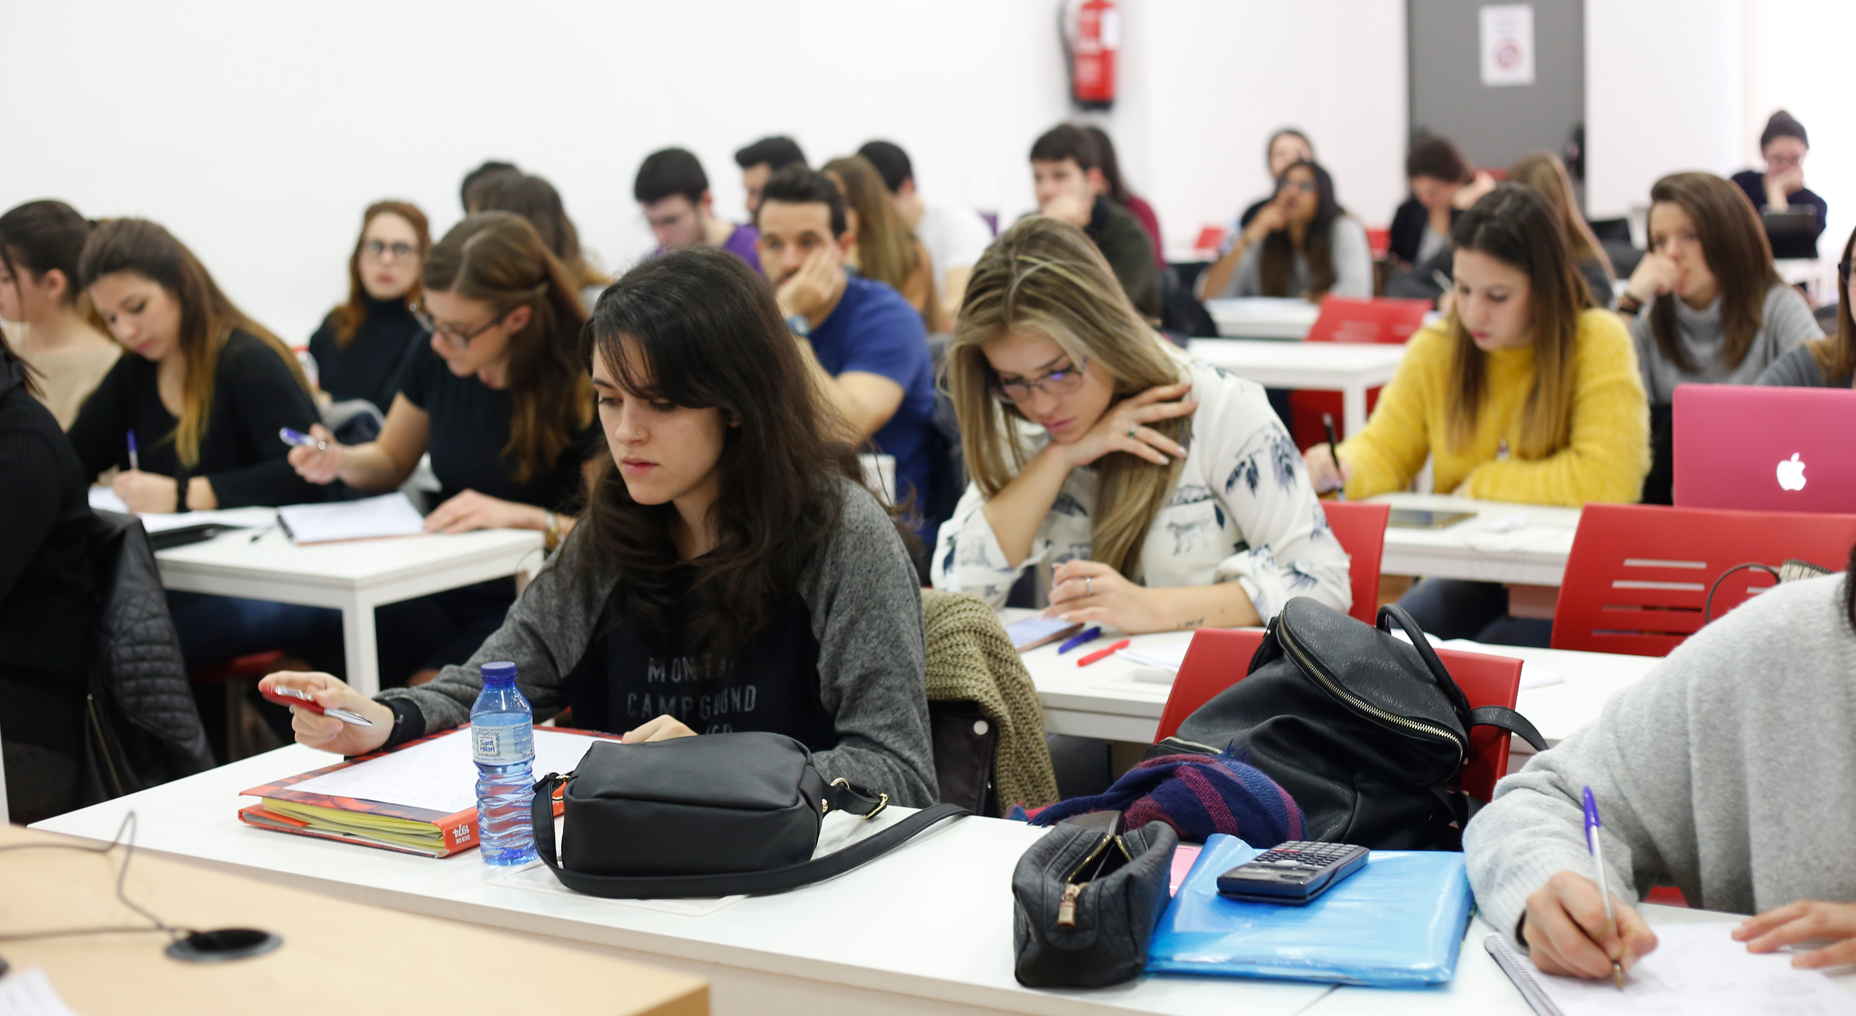 Som Formatic | Escola Universitària Formatic Barcelona